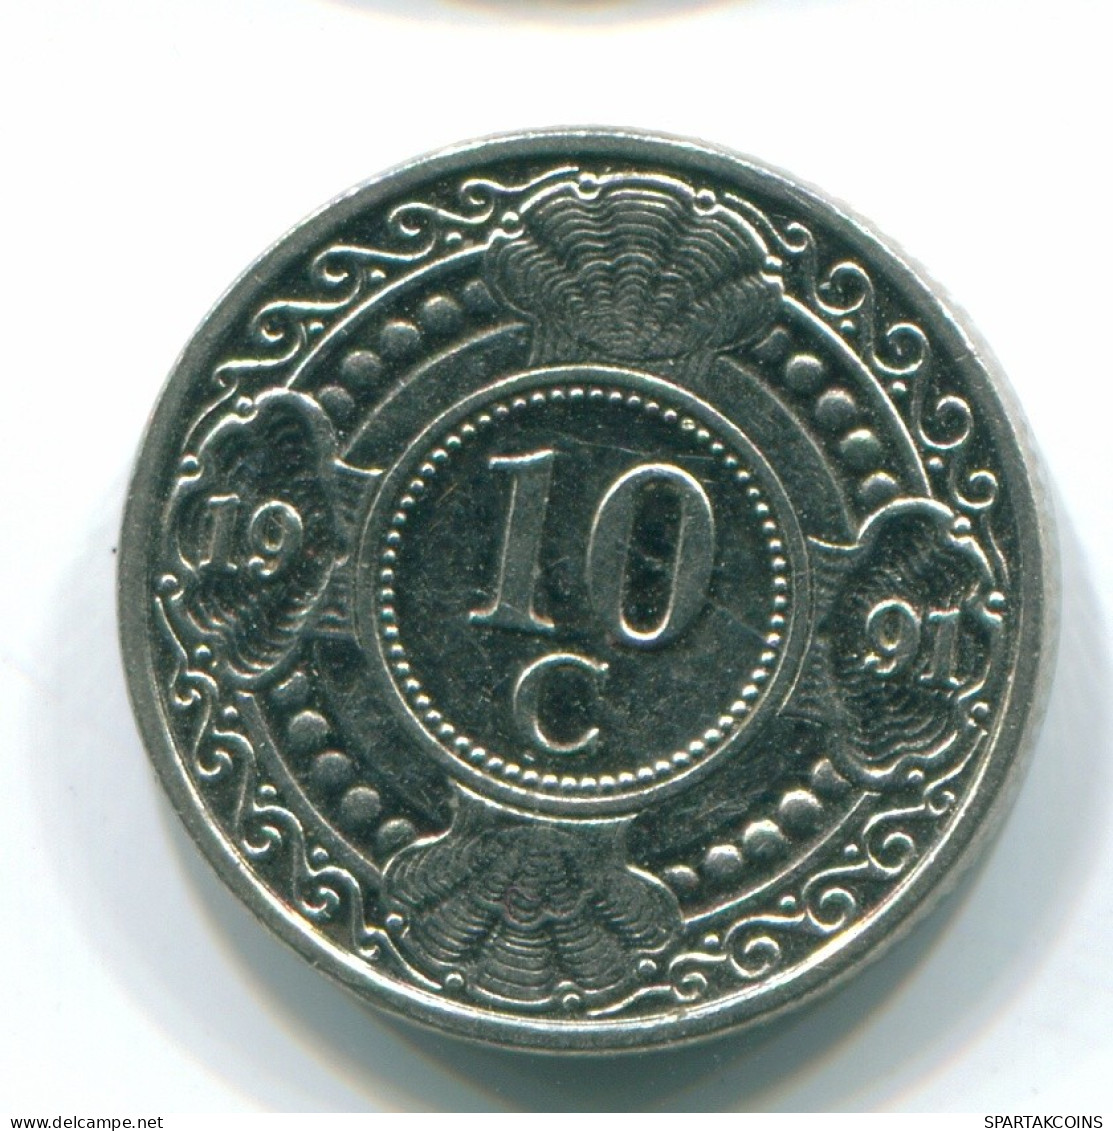 10 CENTS 1991 NETHERLANDS ANTILLES Nickel Colonial Coin #S11336.U.A - Niederländische Antillen